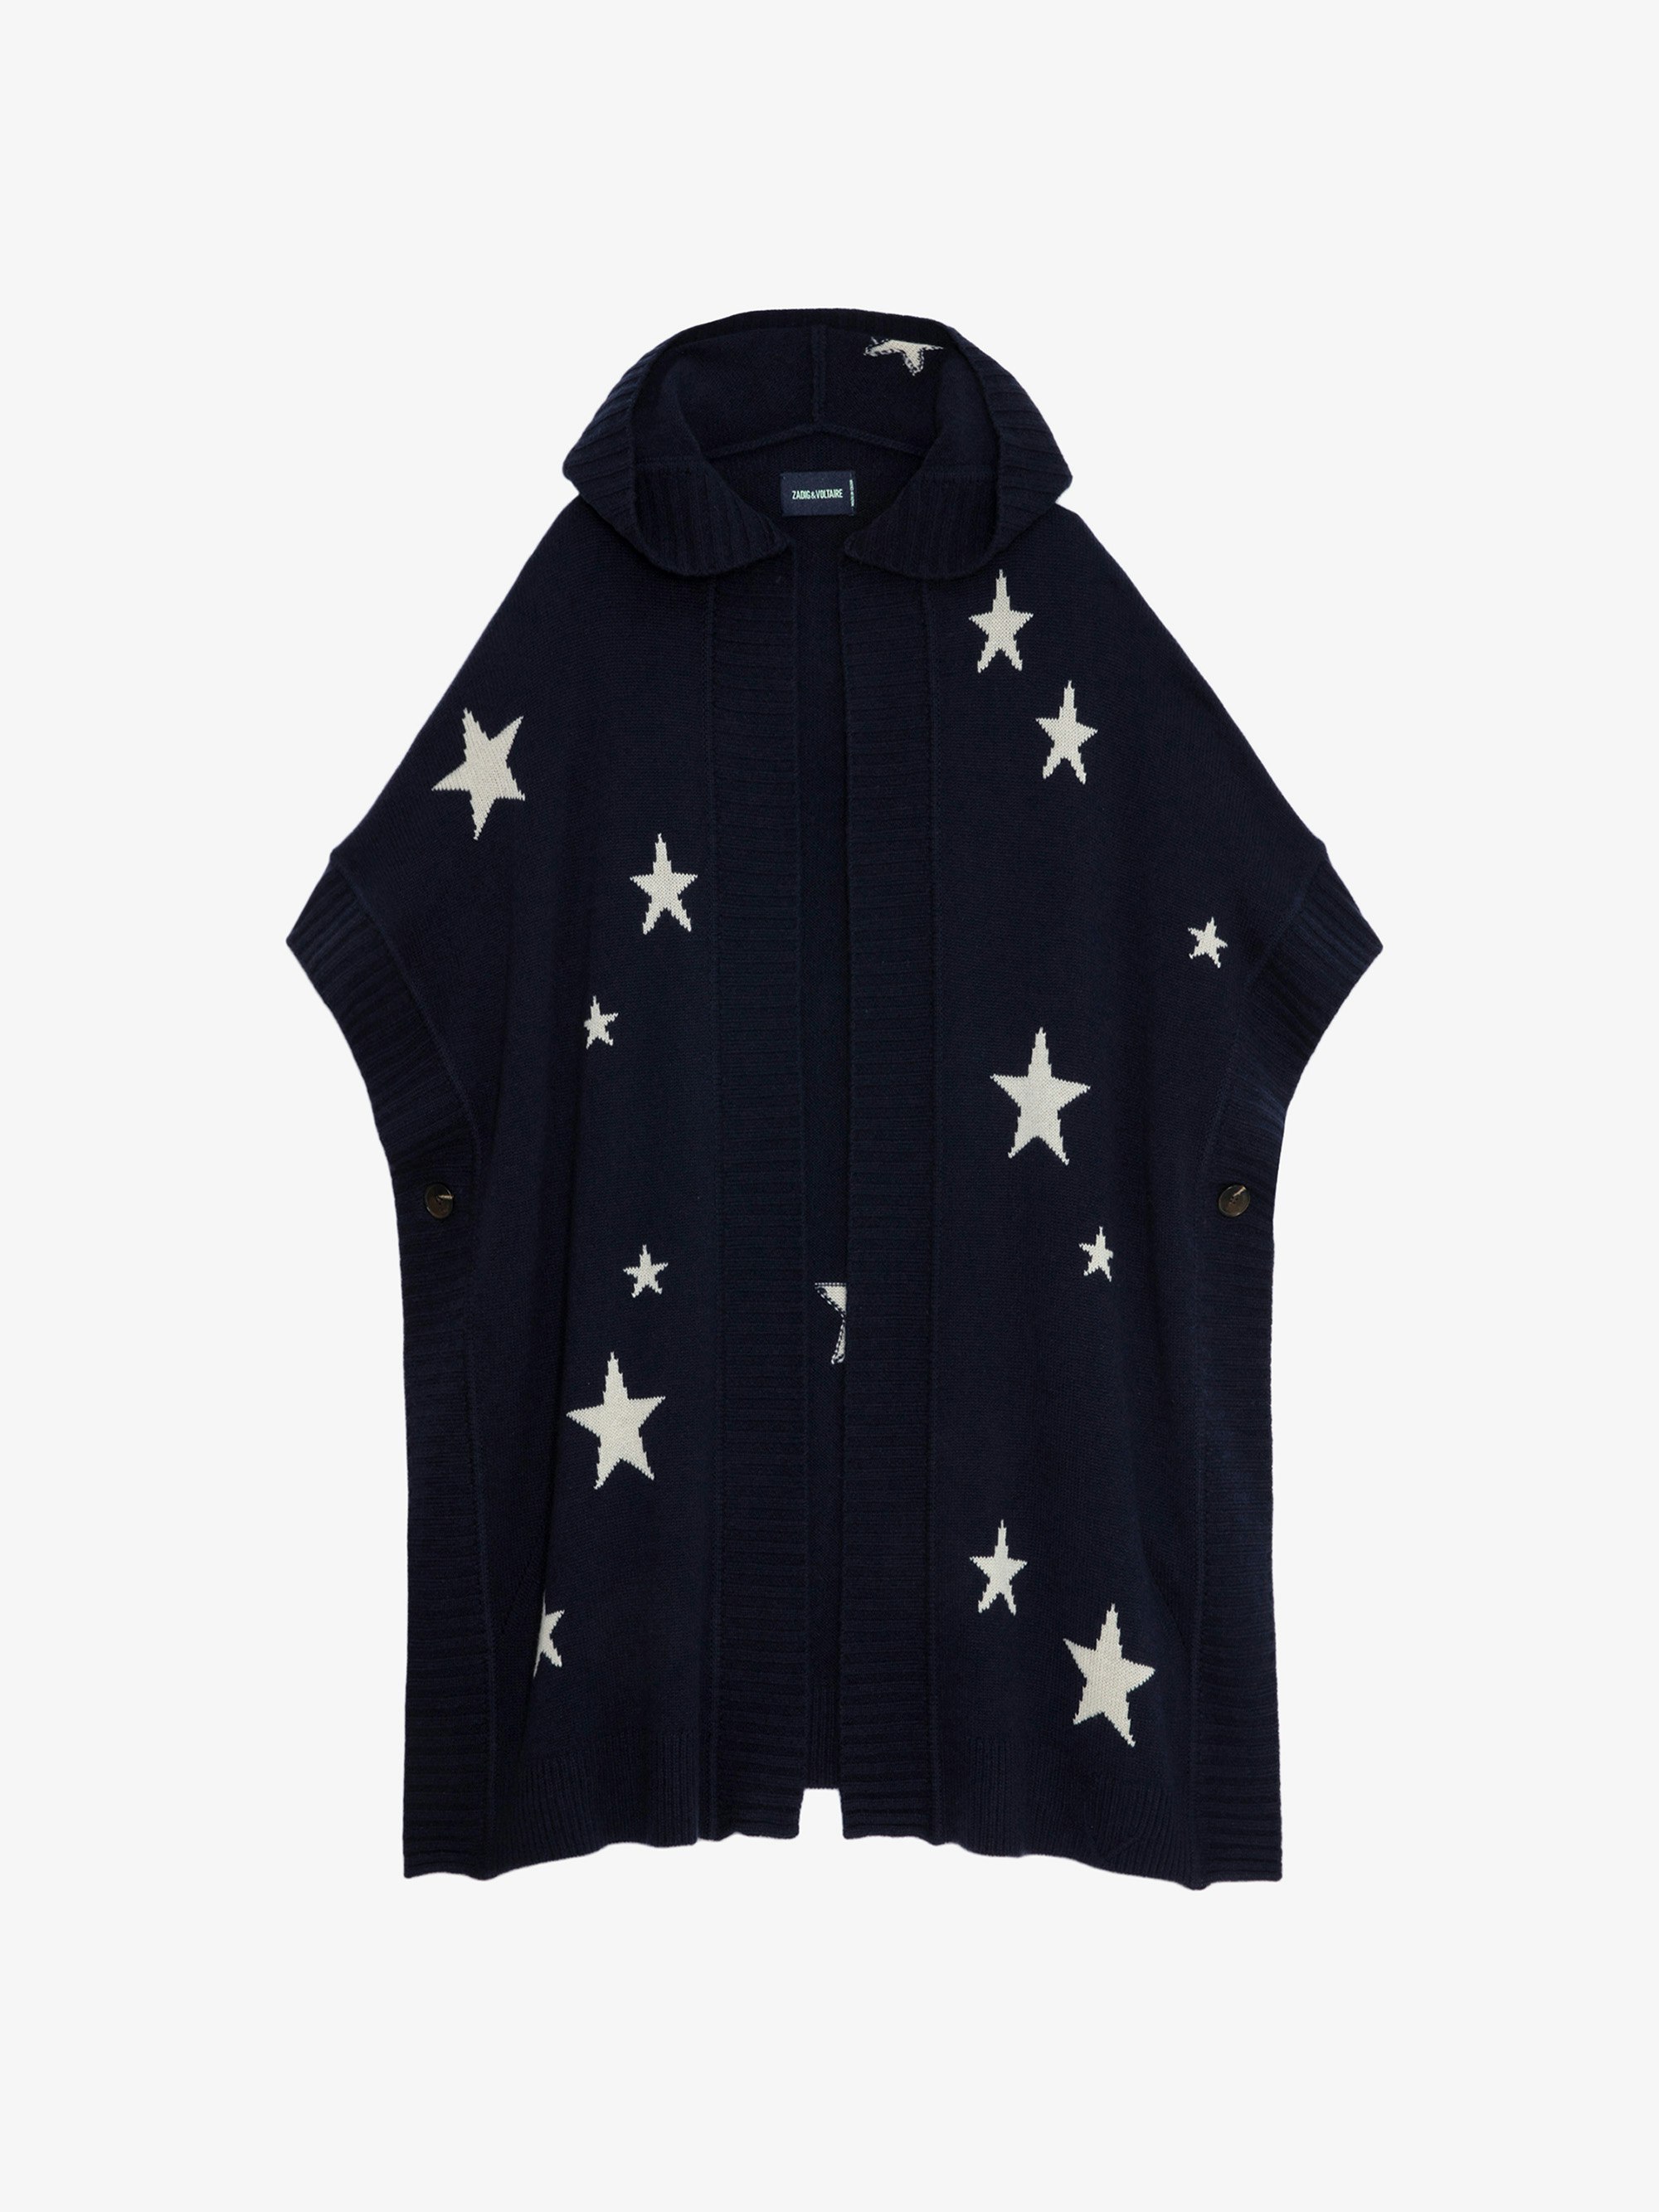 Gilet Inna Stars Cachemire - Gilet manteau long en cachemire bleu marine orné de motifs étoiles en jacquard intarsia.